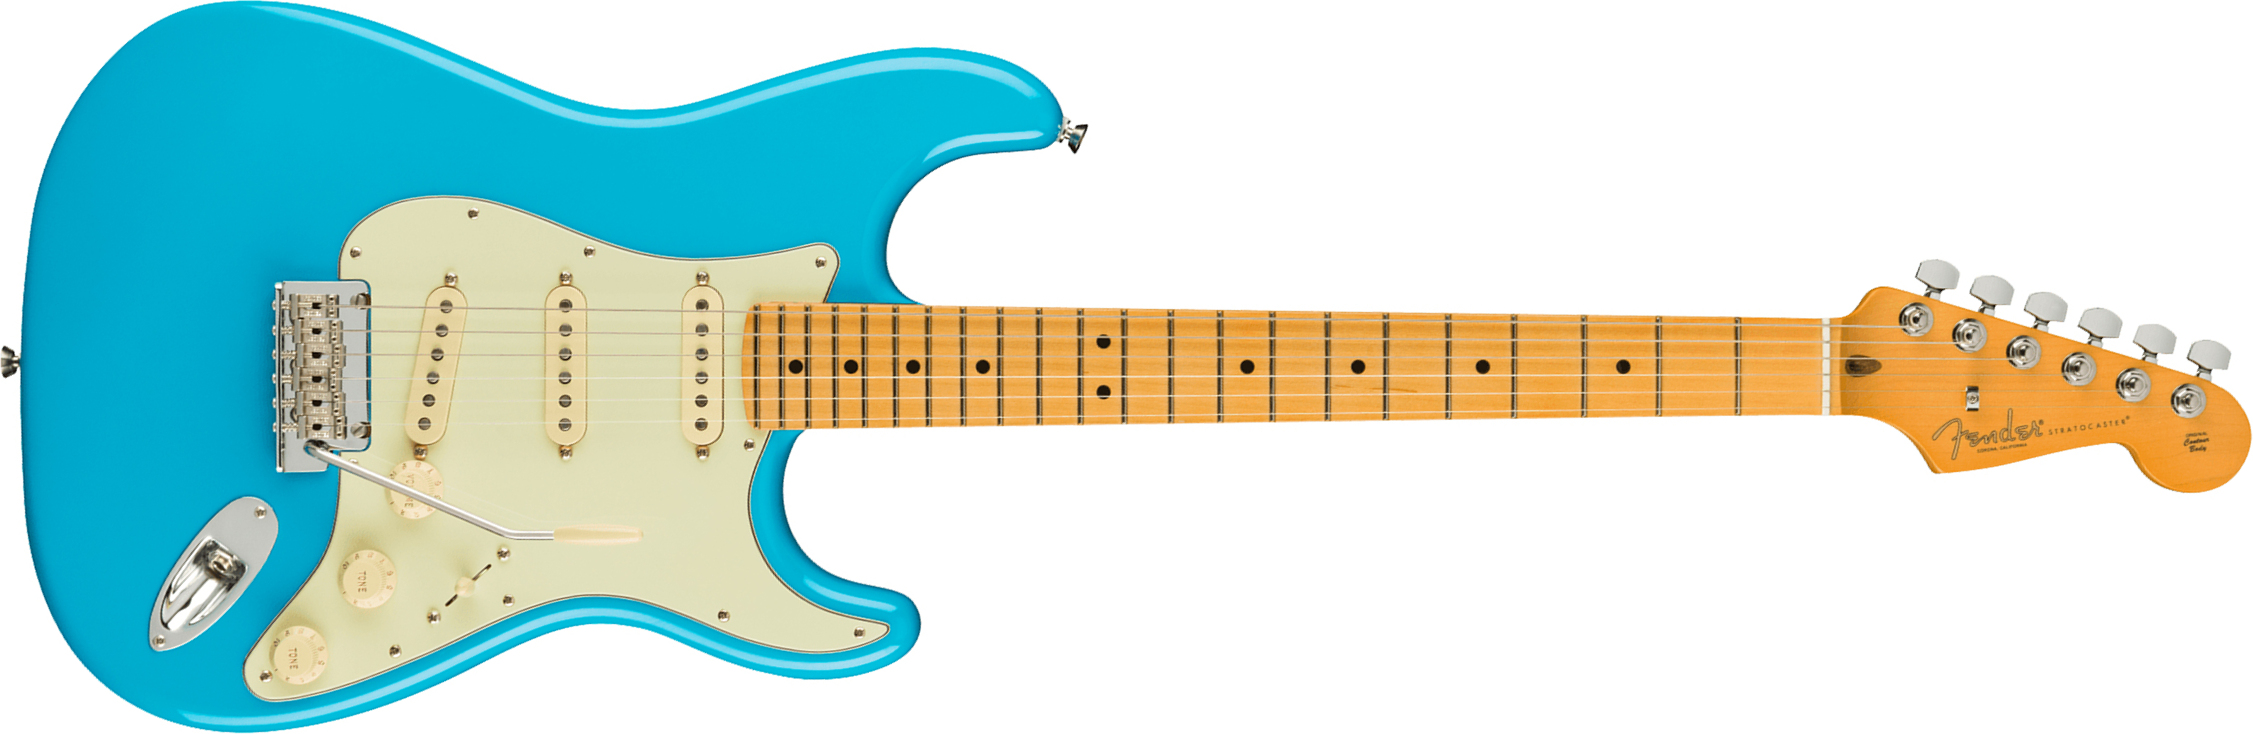 Fender Strat American Professional Ii Usa Mn - Miami Blue - Elektrische gitaar in Str-vorm - Main picture